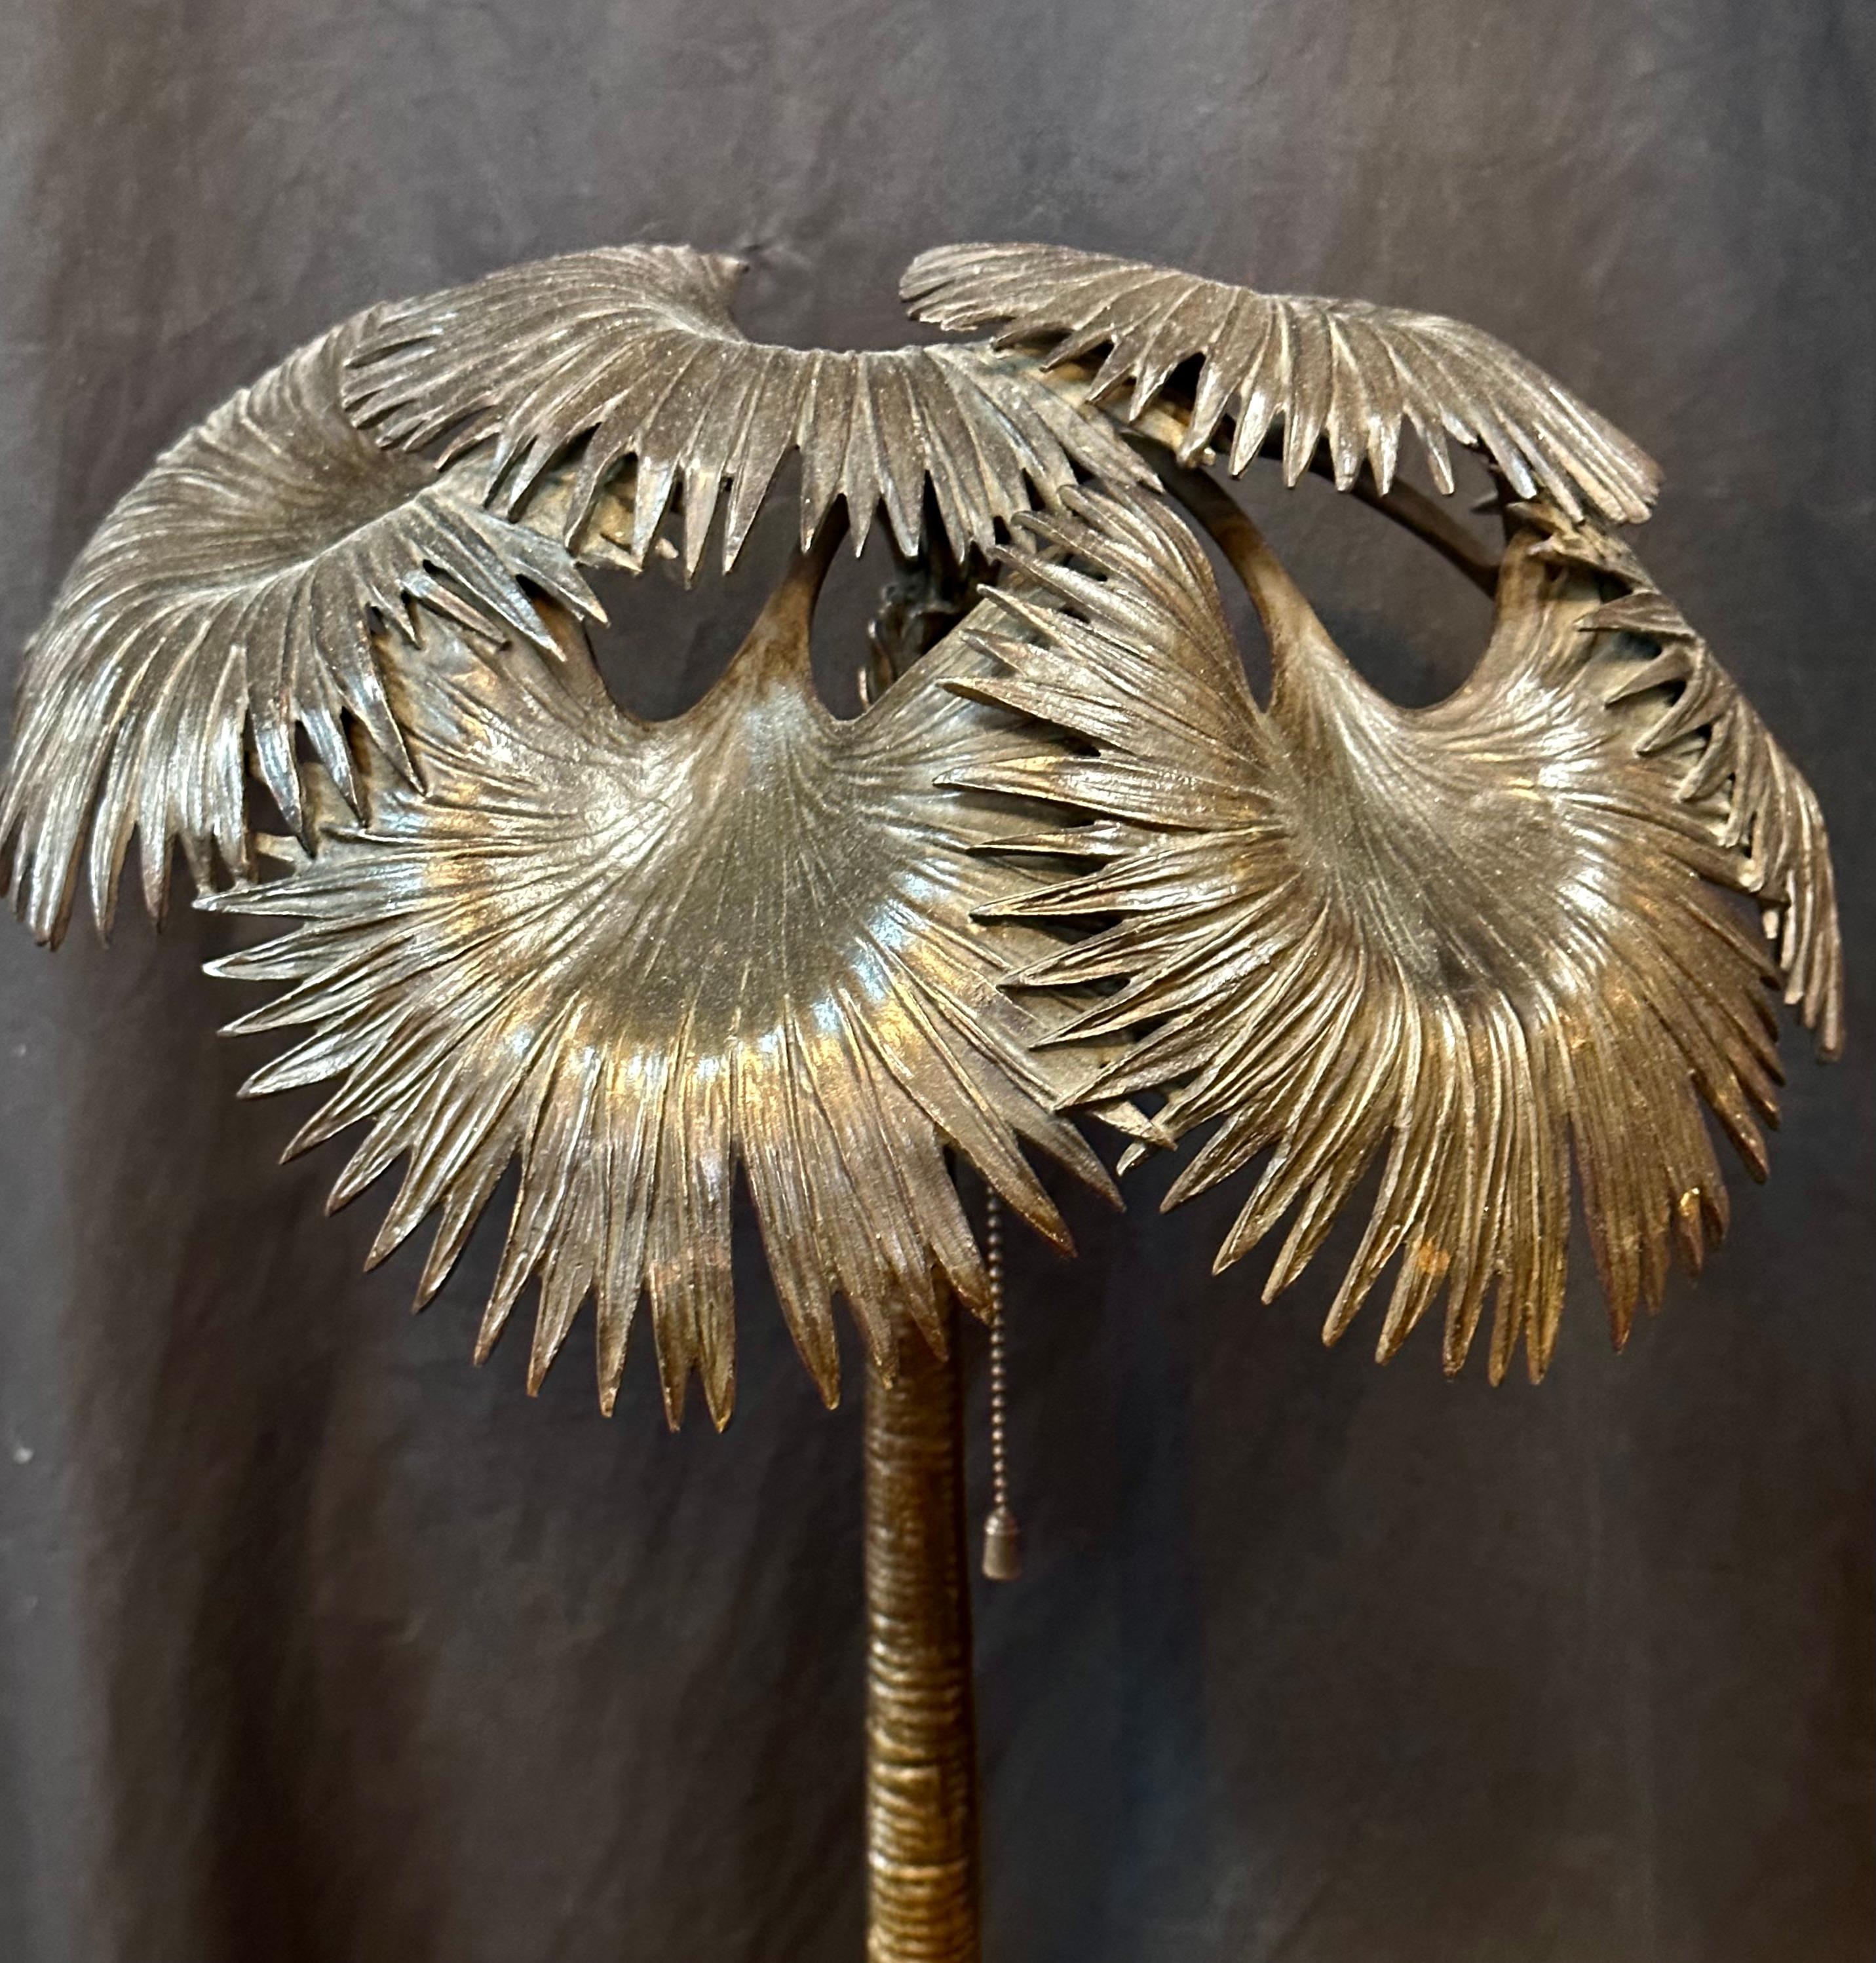 Diese alte österreichische Bronzelampe aus dem frühen 20. Jahrhundert ist mit zwei Elefanten unter einer Palme geschmückt. Sie hat einen naturalistisch aussehenden Sockel, der mit AUSTRIA gestempelt ist. Die Skulptur erinnert an eine Bronzeskulptur